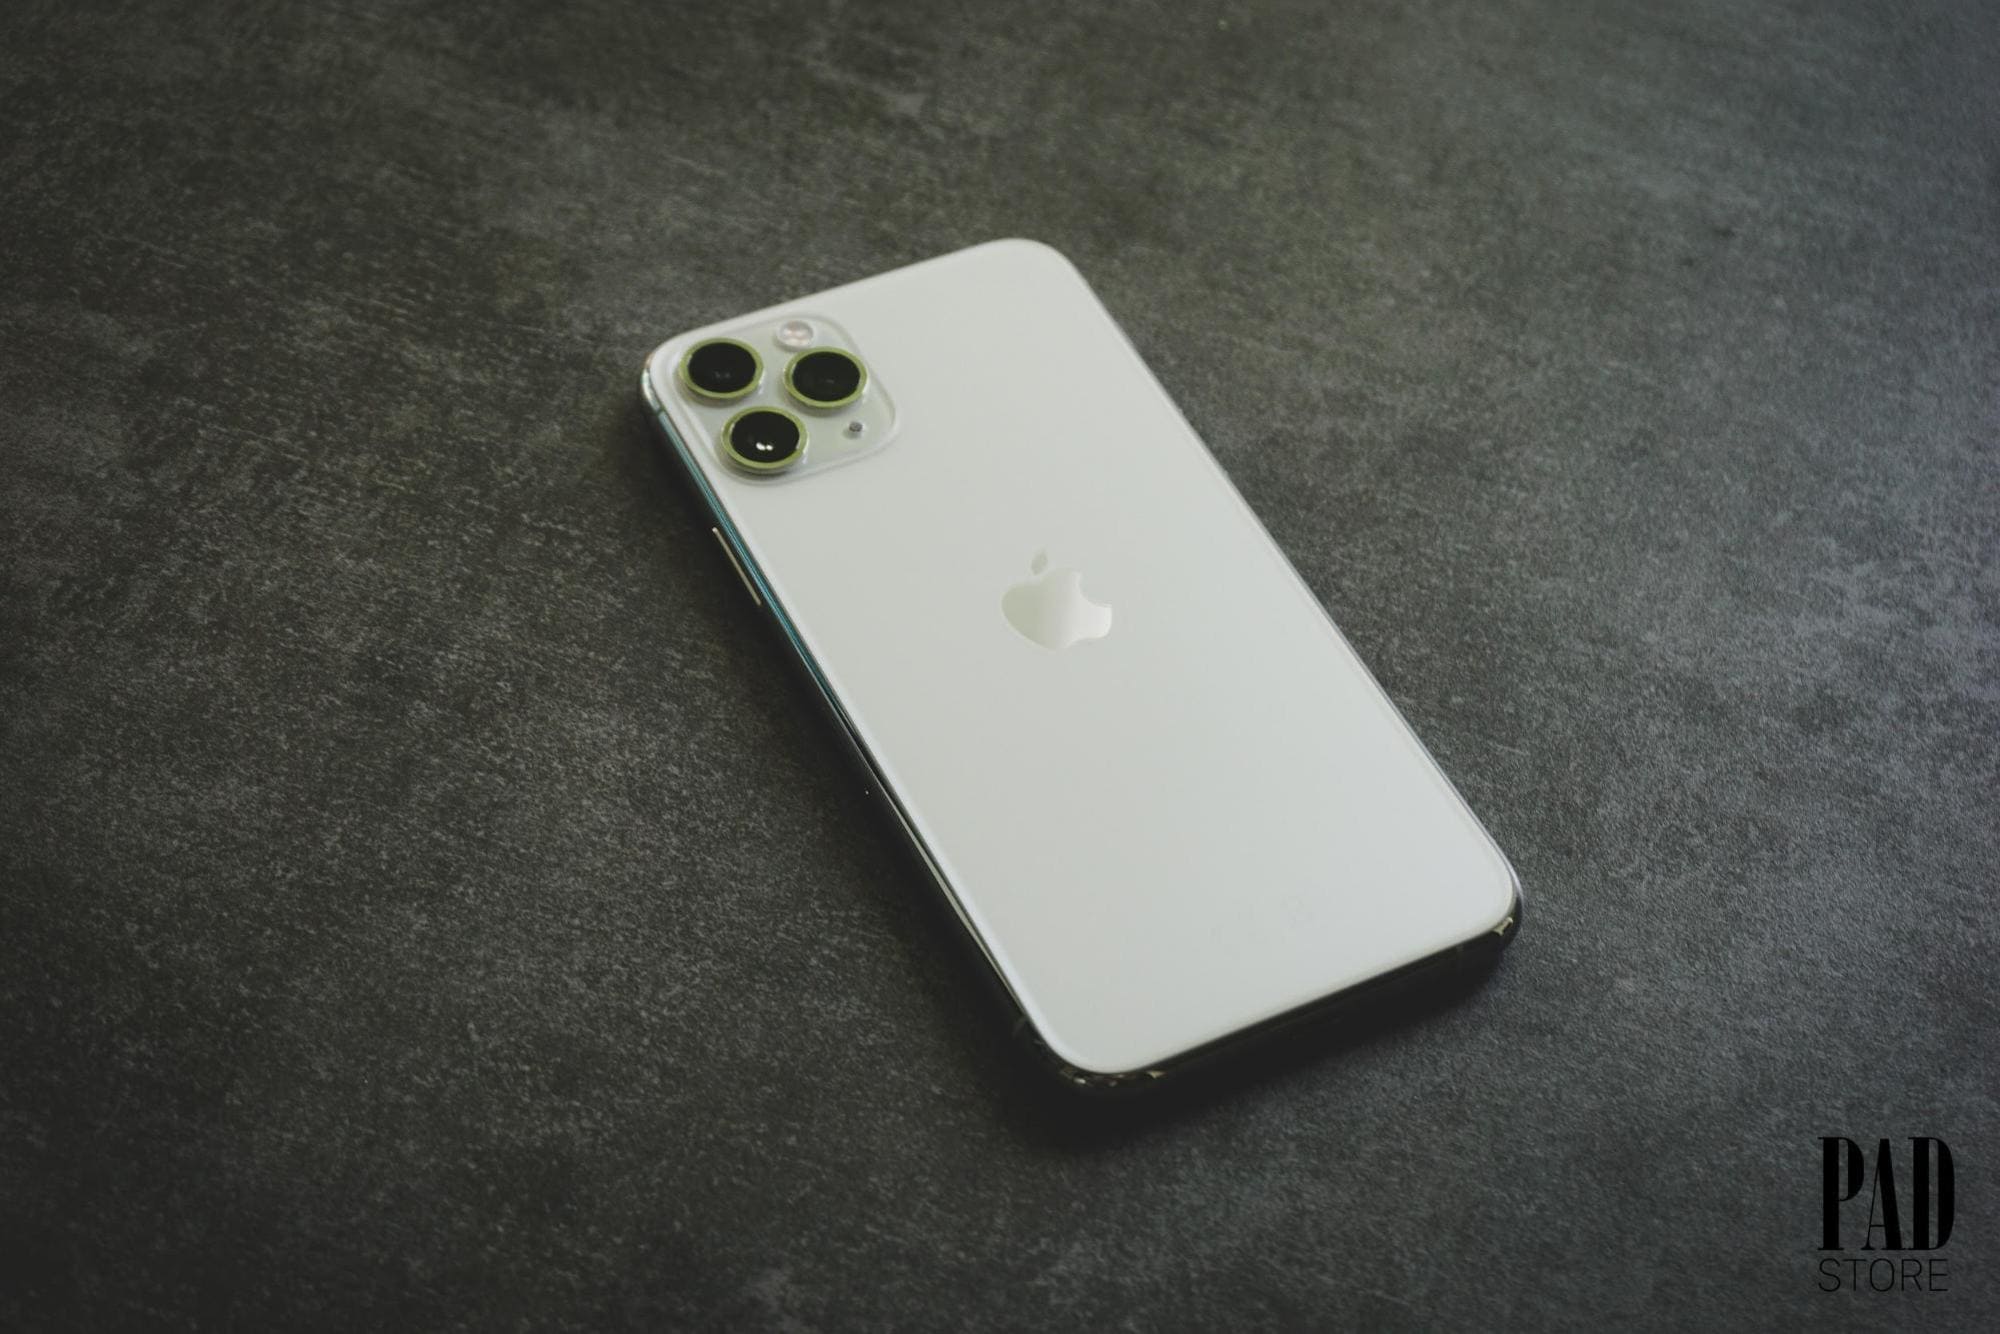 Bạn sẽ mãn nhãn khi ngắm hình ảnh iPhone 11 Pro Max phiên bản màu đỉnh nhất. Thiết kế hiện đại và đầy mê hoặc, mang đến cảm giác sang trọng và độc đáo.